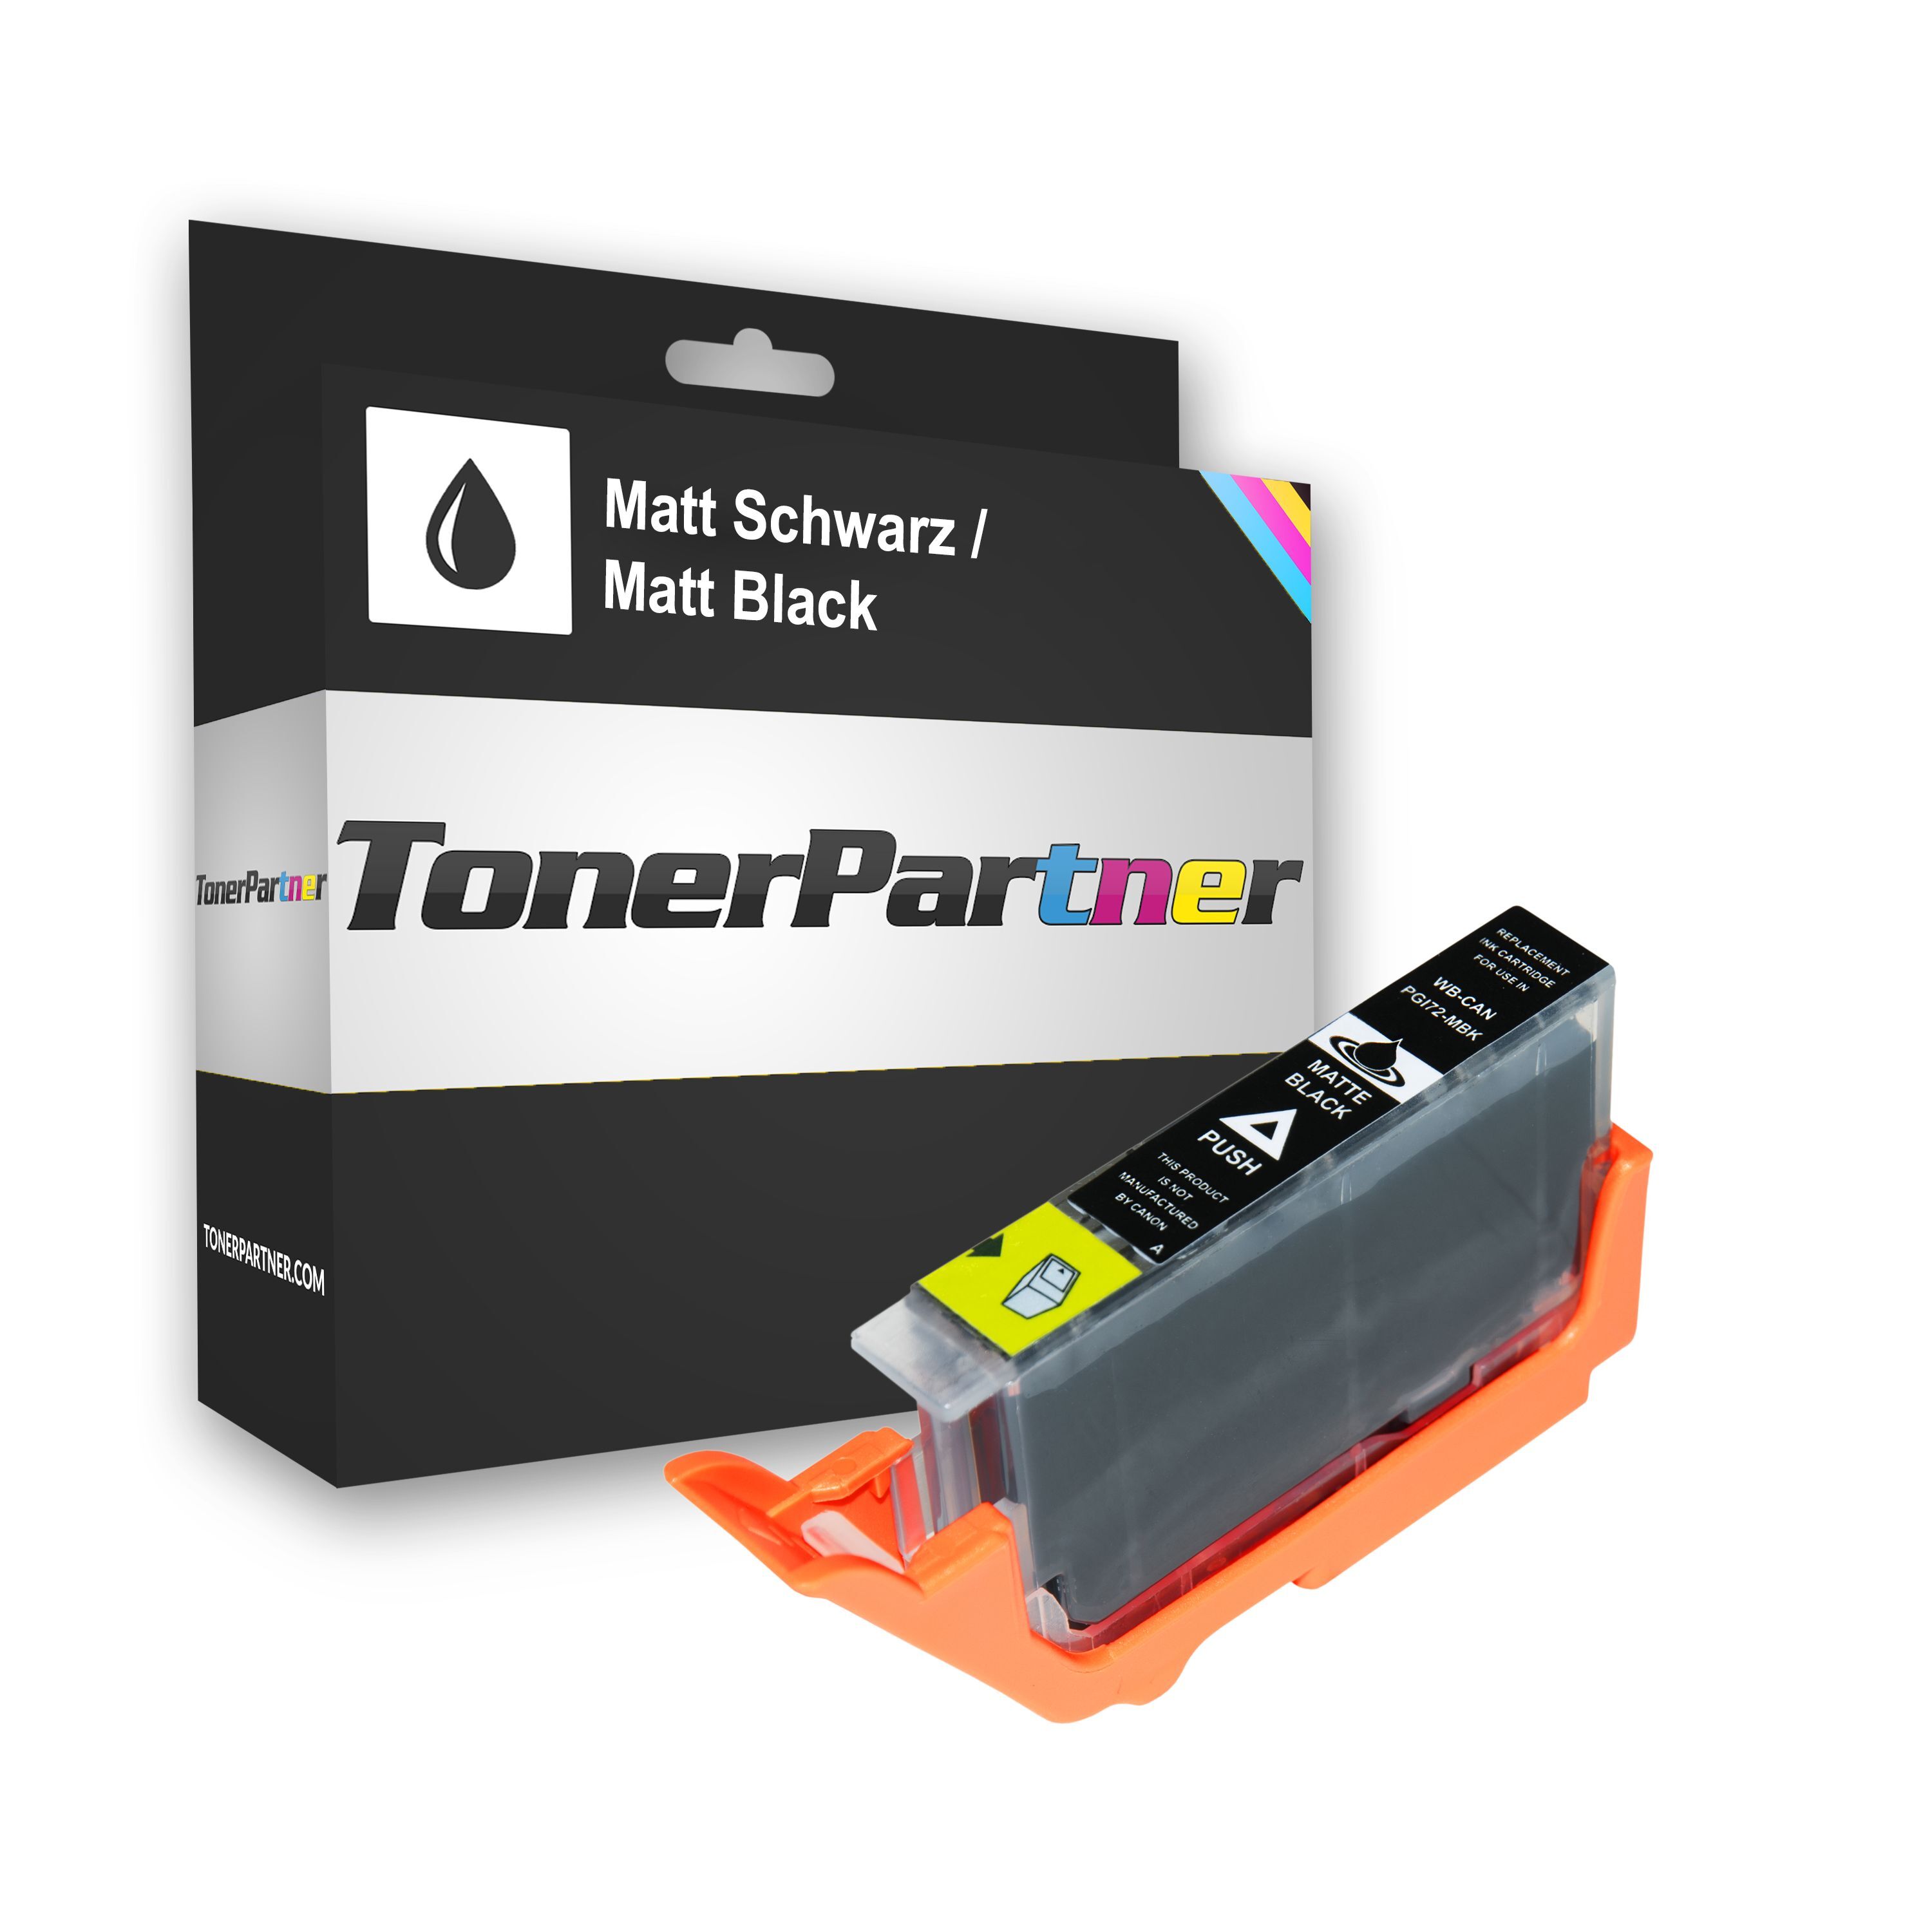 TonerPartner Kompatibel zu Canon PGI-72 MBK / 6402 B 001 Tintenpatrone schwarz, 1.100 Seiten, 0,53 Rp pro Seite, Inhalt: 13 ml von TonerPartner